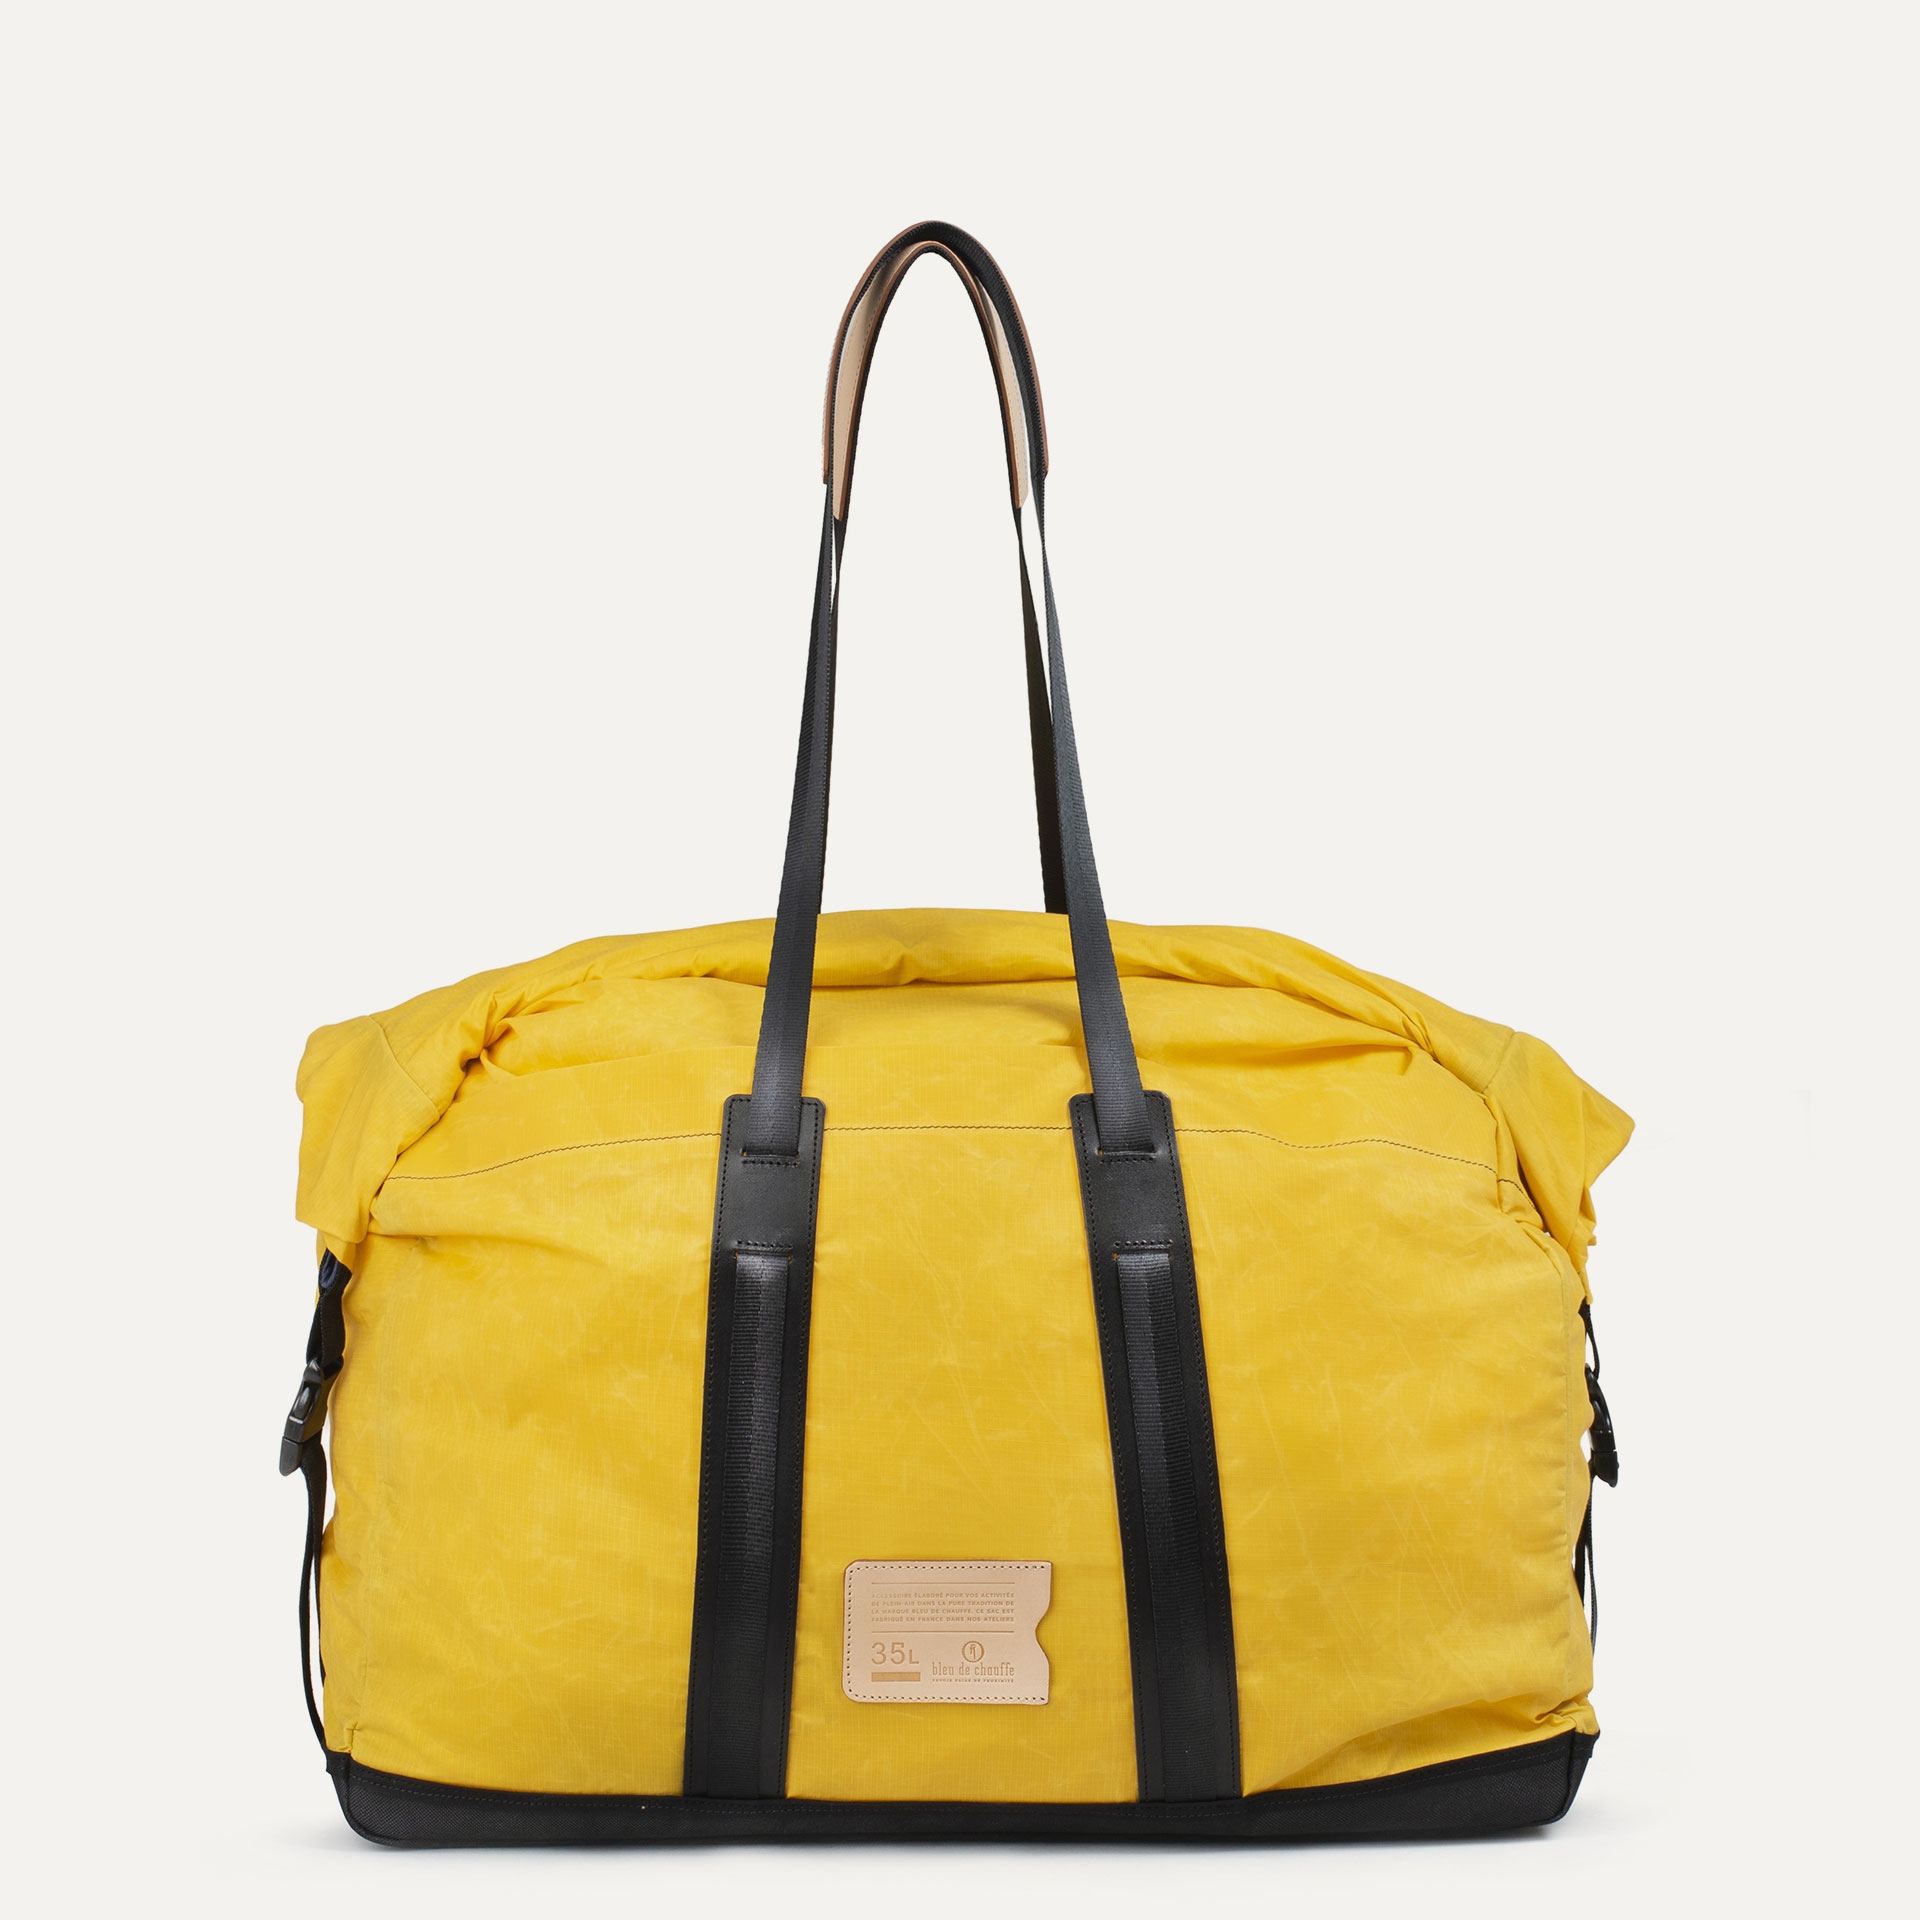 35L Baroud Travel bag - Sun Yellow (image n°1)